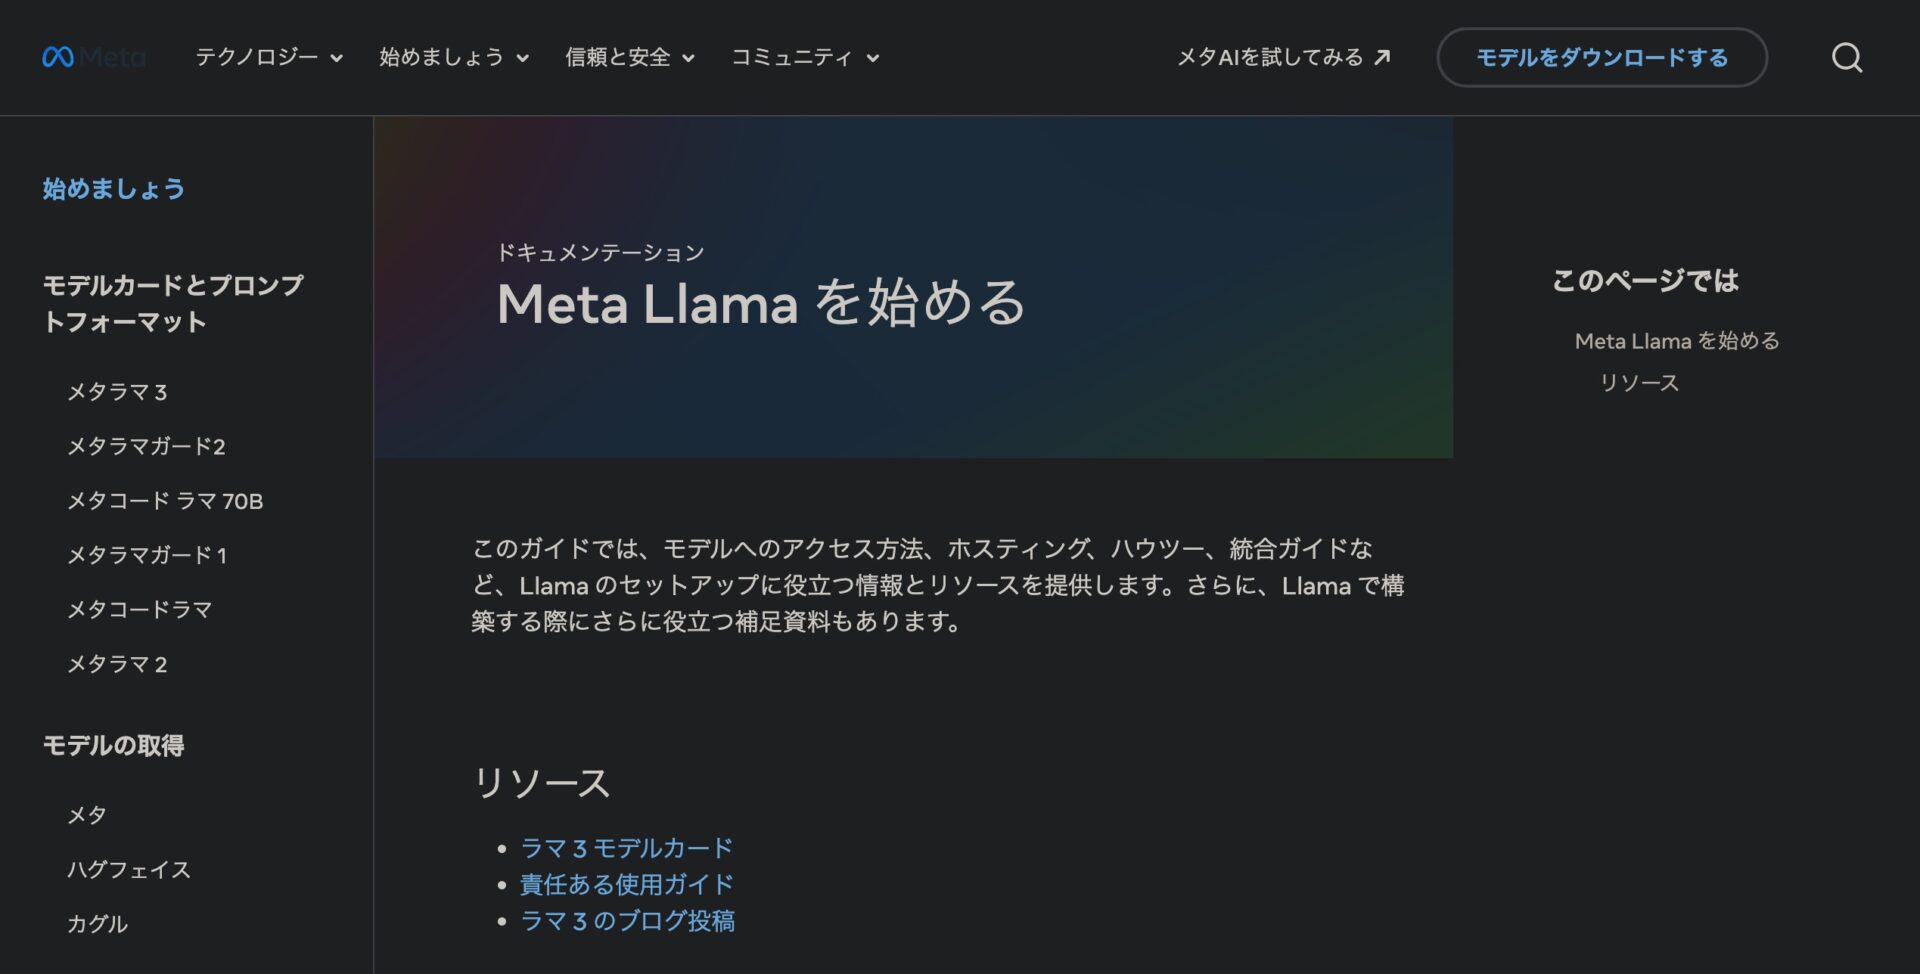 Meta Llamaの使い方、始め方の画面。